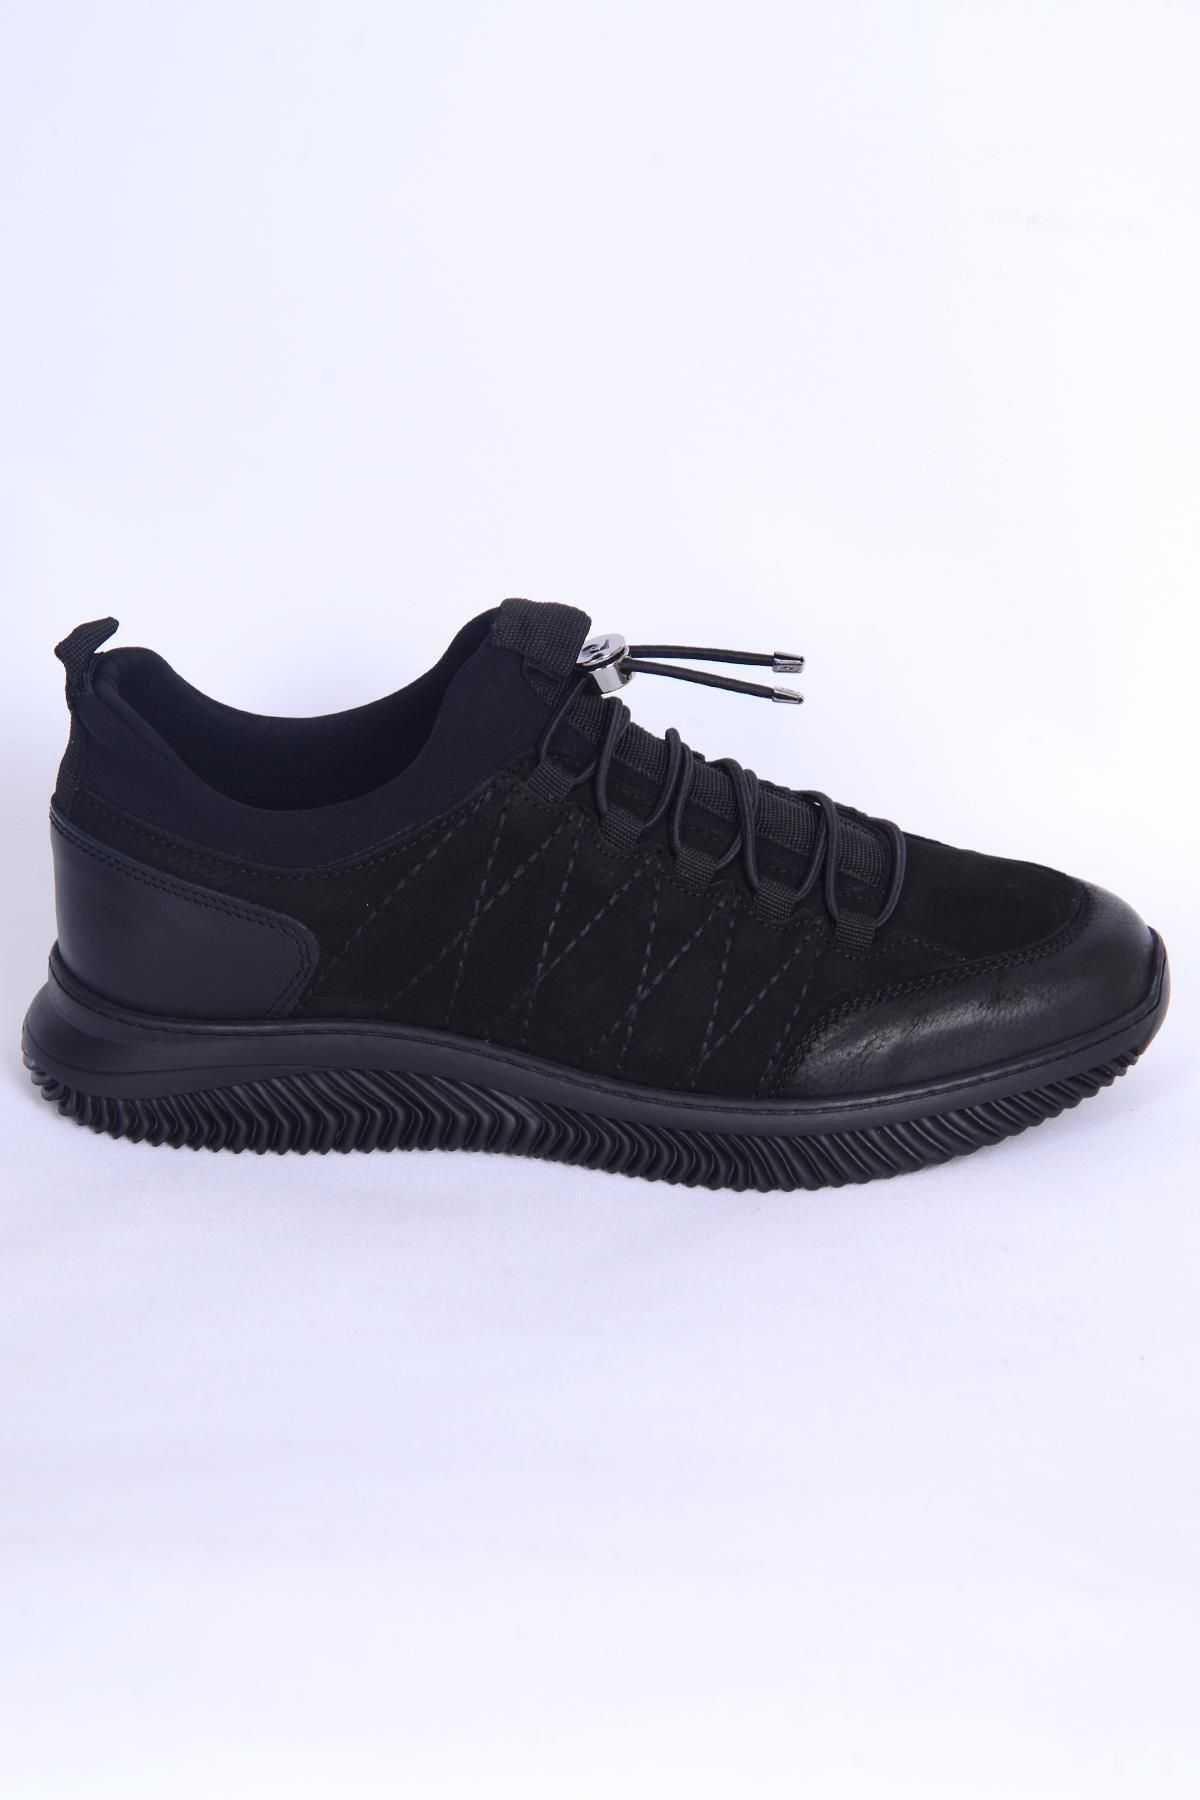 Pierre Cardin 77541 Siyah Erkek Kışlık Ayakkabı